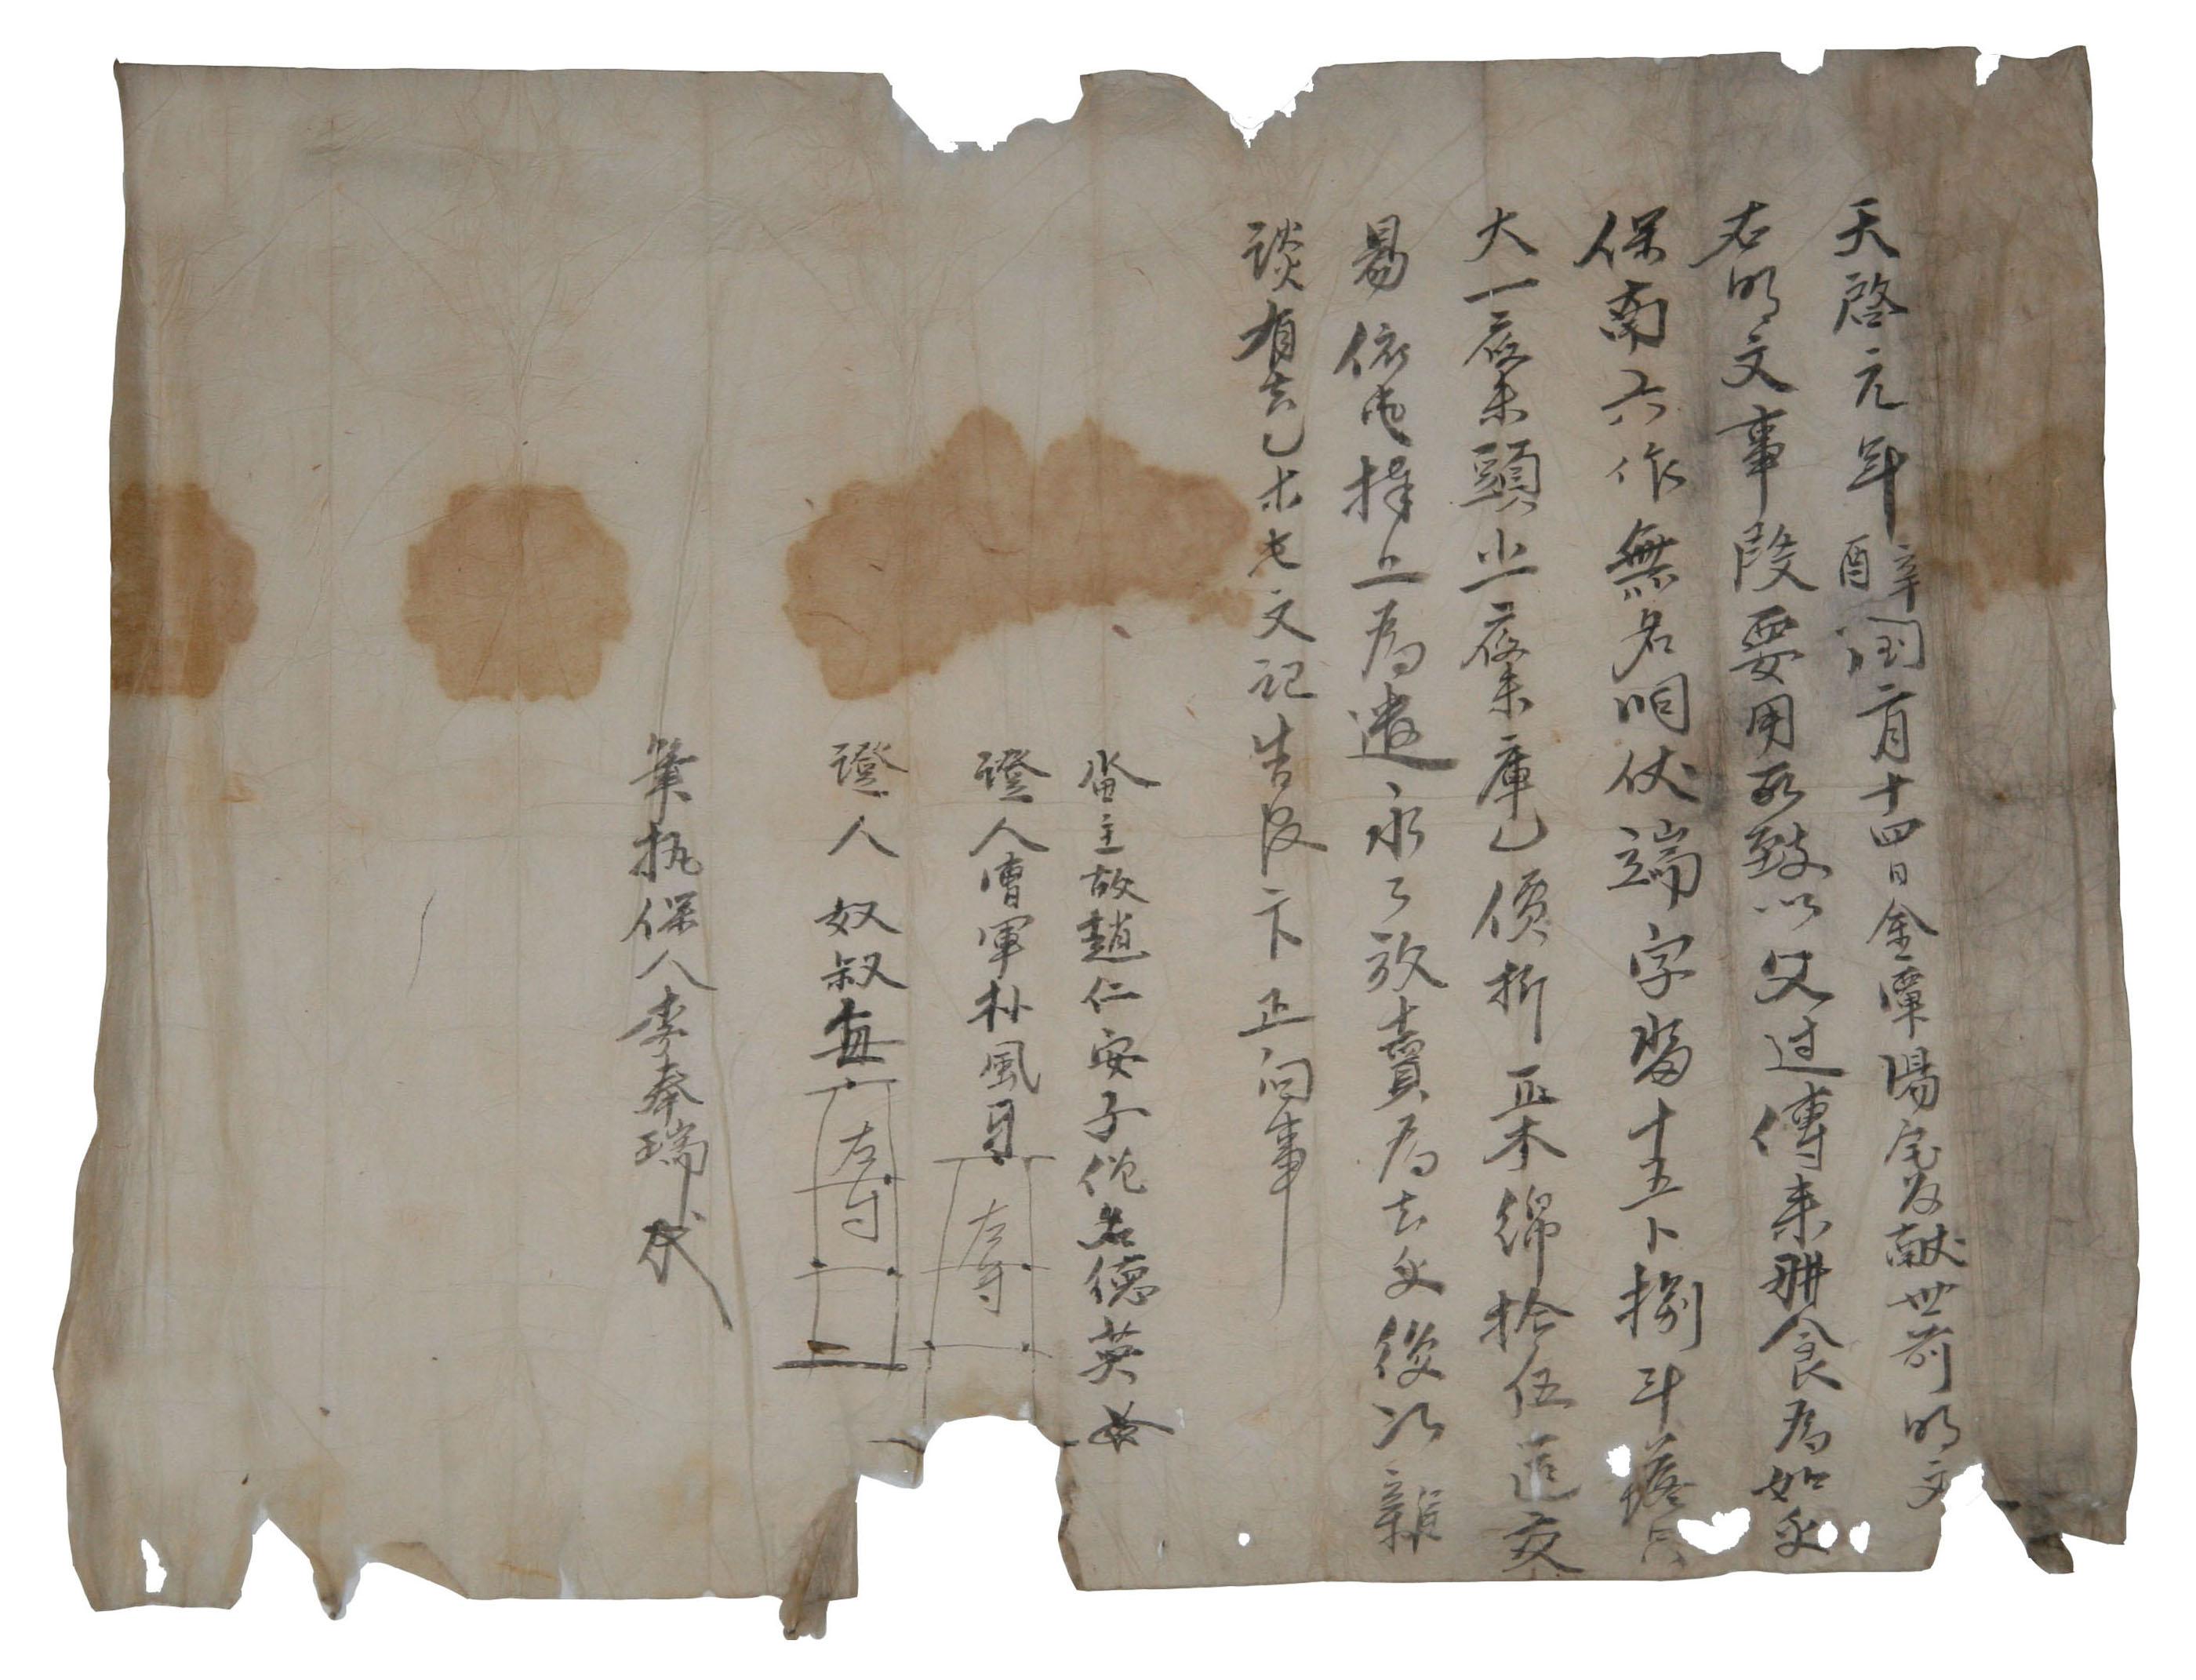 1621년 승 덕영이 김담양댁에 논을 팔면서 작성한 전답매매문기